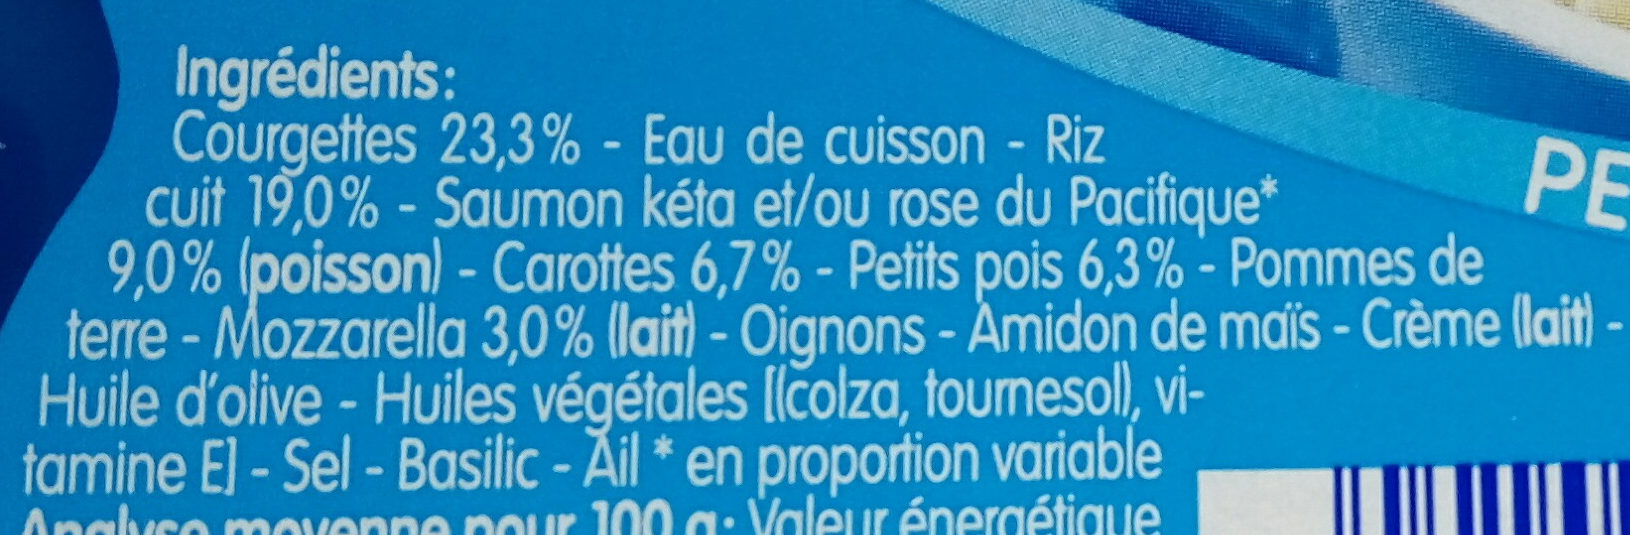 Blédichef Risotto aux Courgettes, Saumon du Pacifique et Mozzarella - المكونات - fr